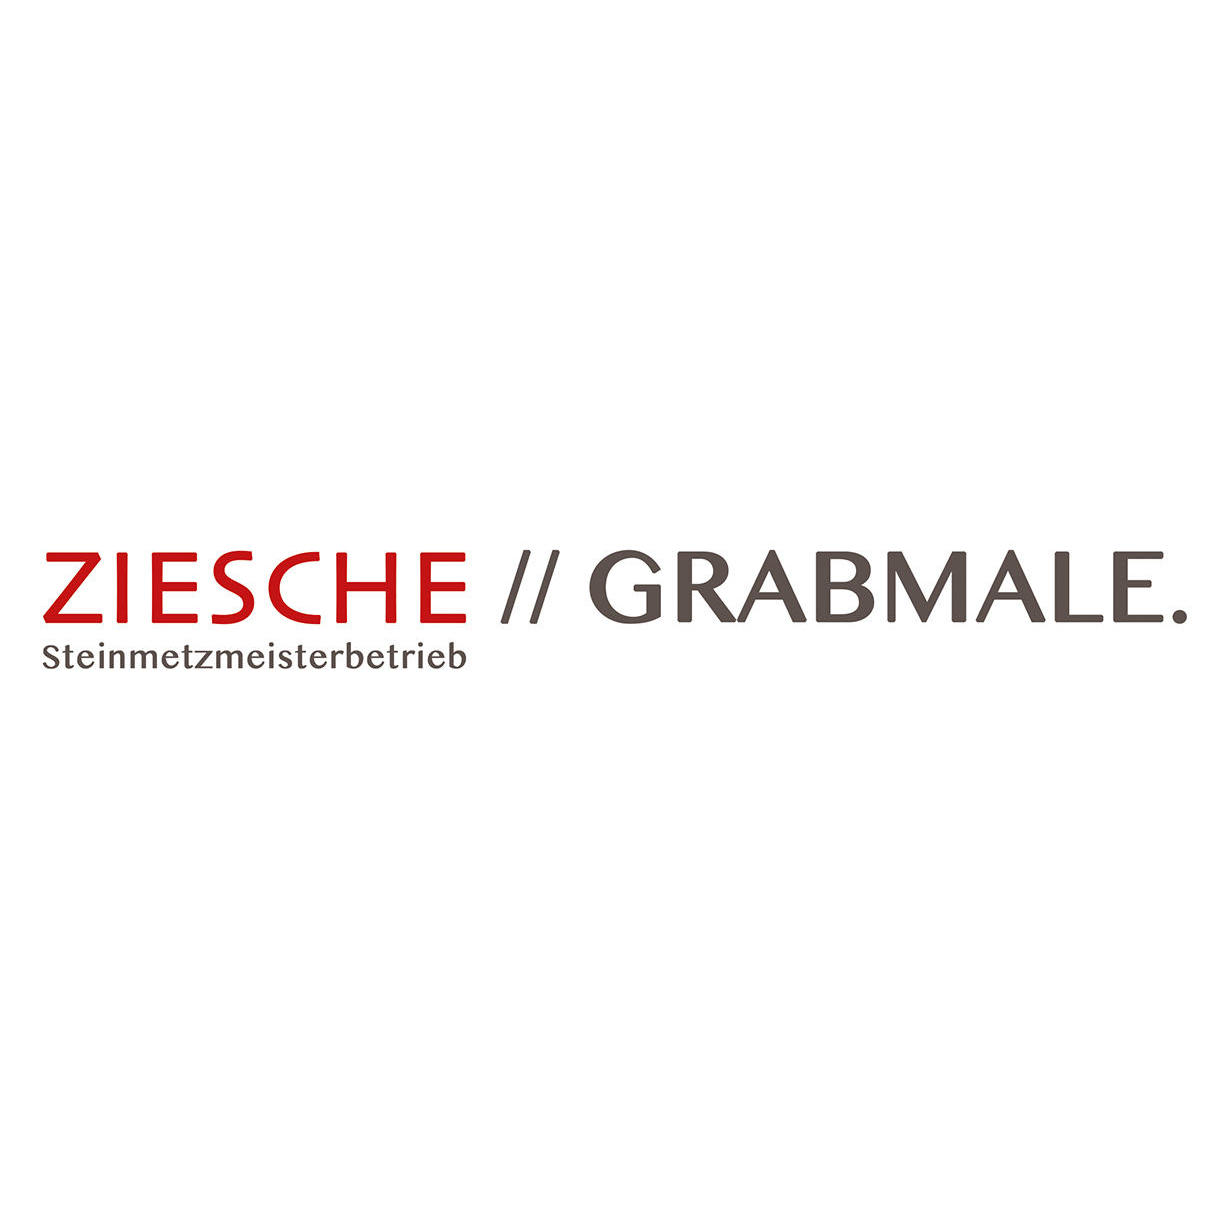 ZIESCHE // GRABMALE. Steinmetzmeisterbetrieb in Bochum - Logo